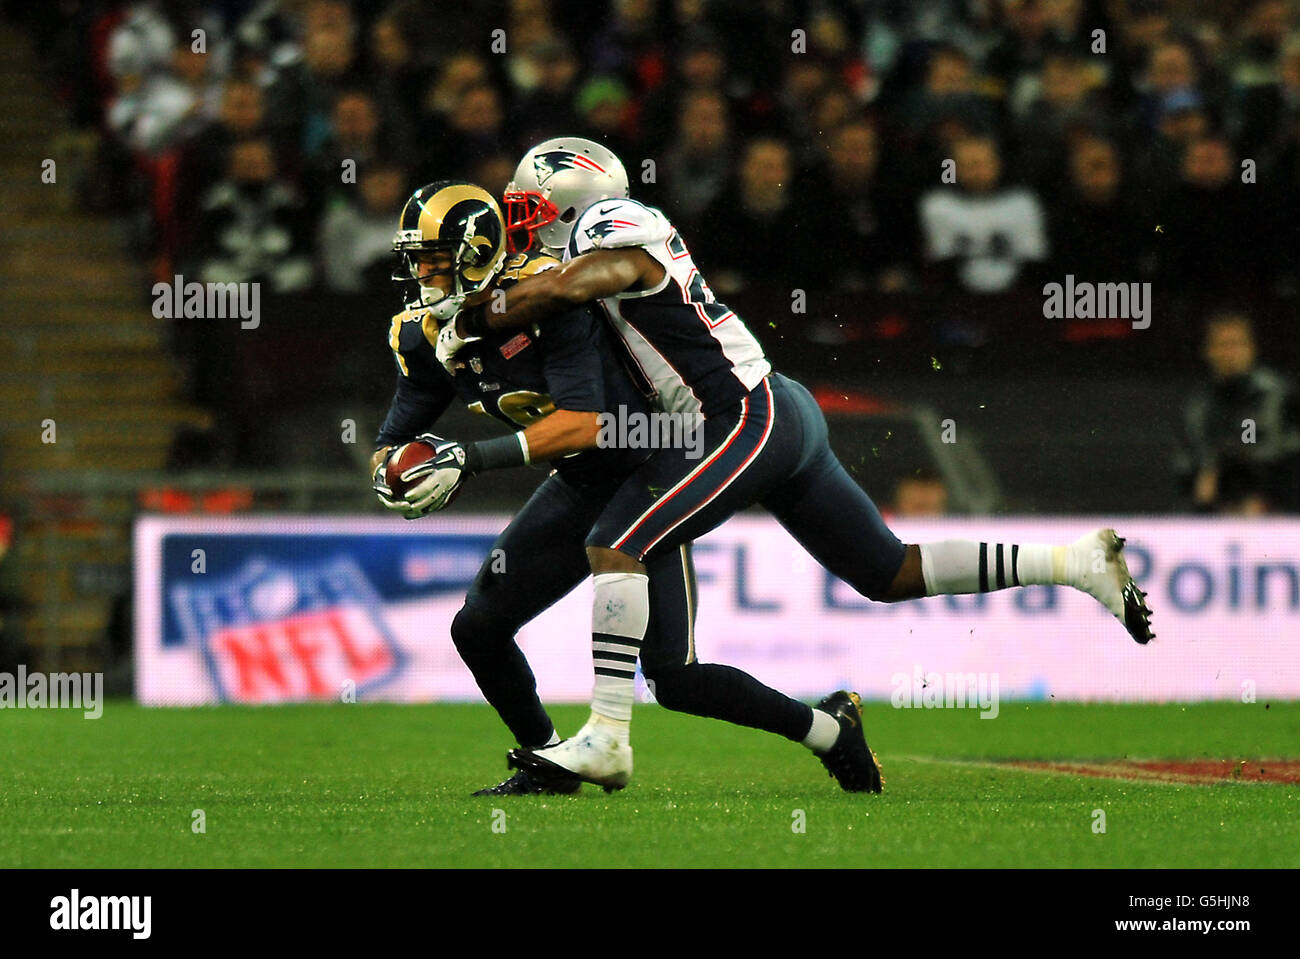 Austin Pettis von St. Louis Rams wird vom New England Patriots' Tavon Wilson während des Spiels der NFL International Series im Wembley Stadium, London, angegangen. Stockfoto